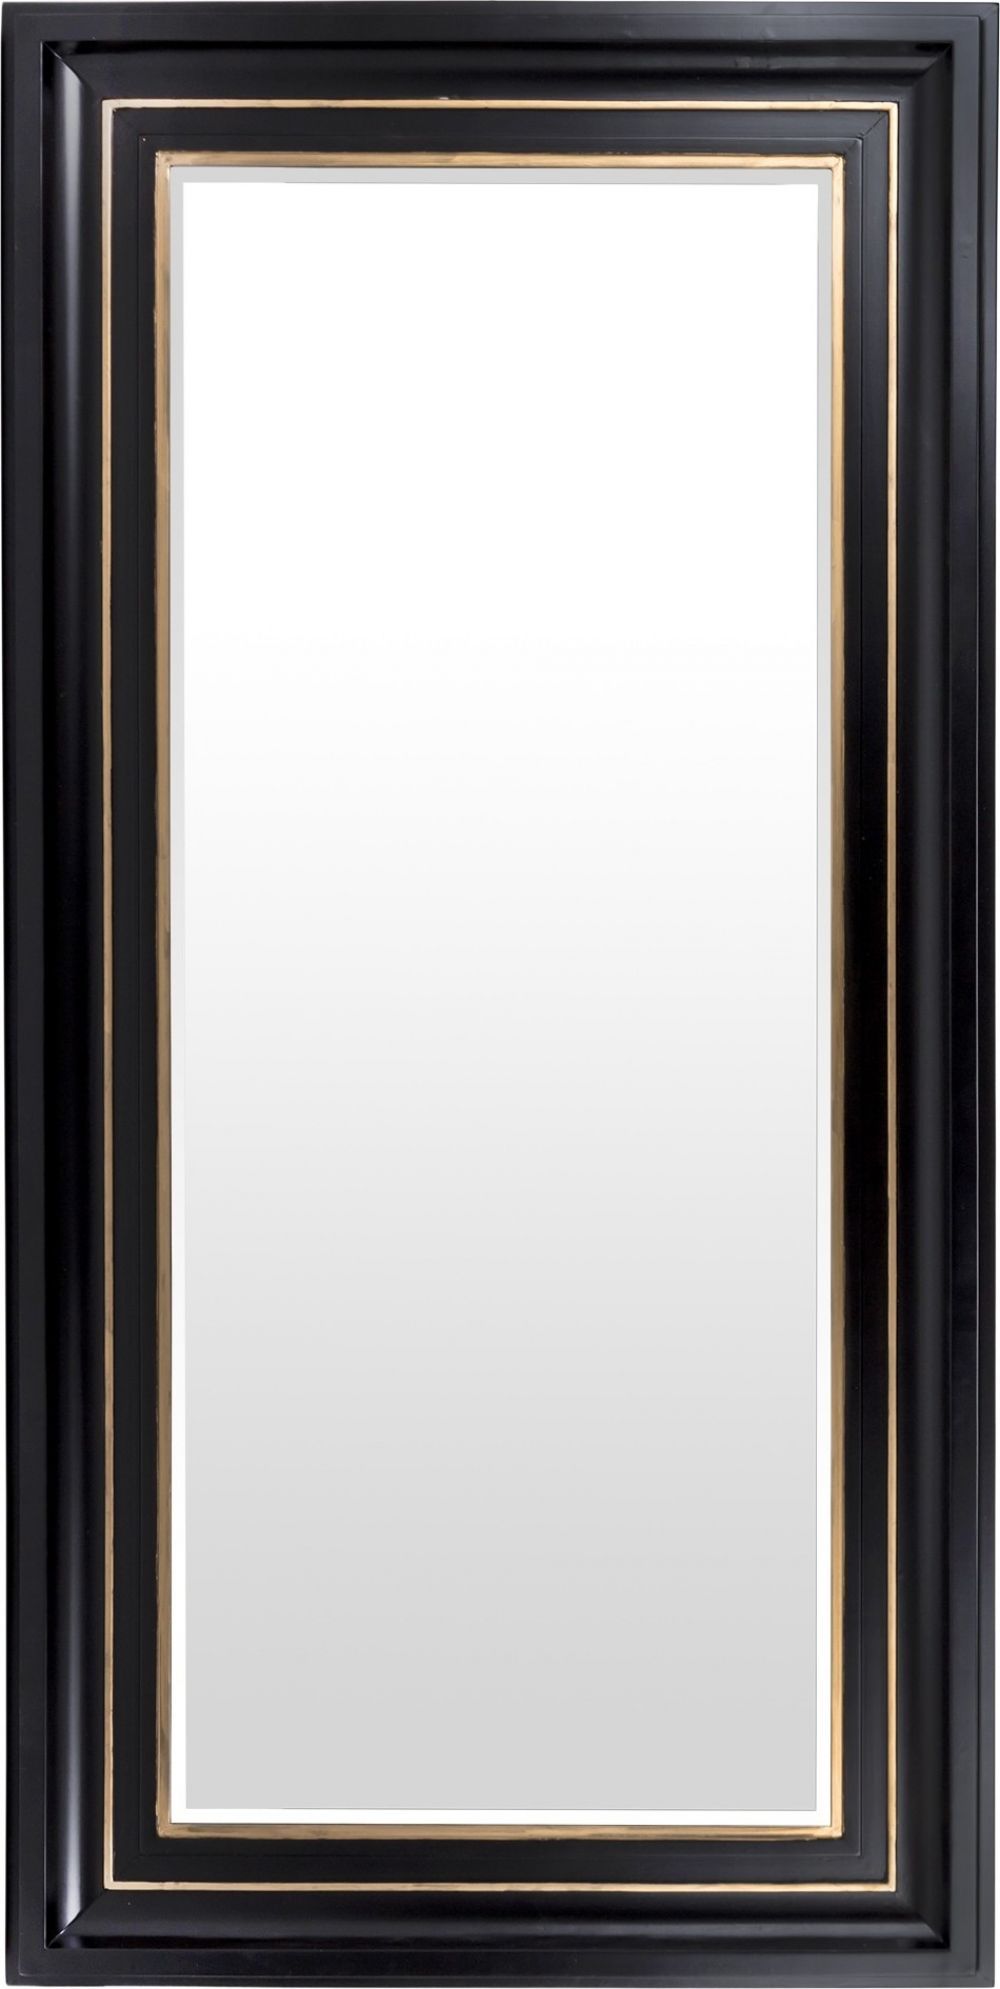 Dřevěné zrcadlo černé 138634 Mdum - M DUM.cz